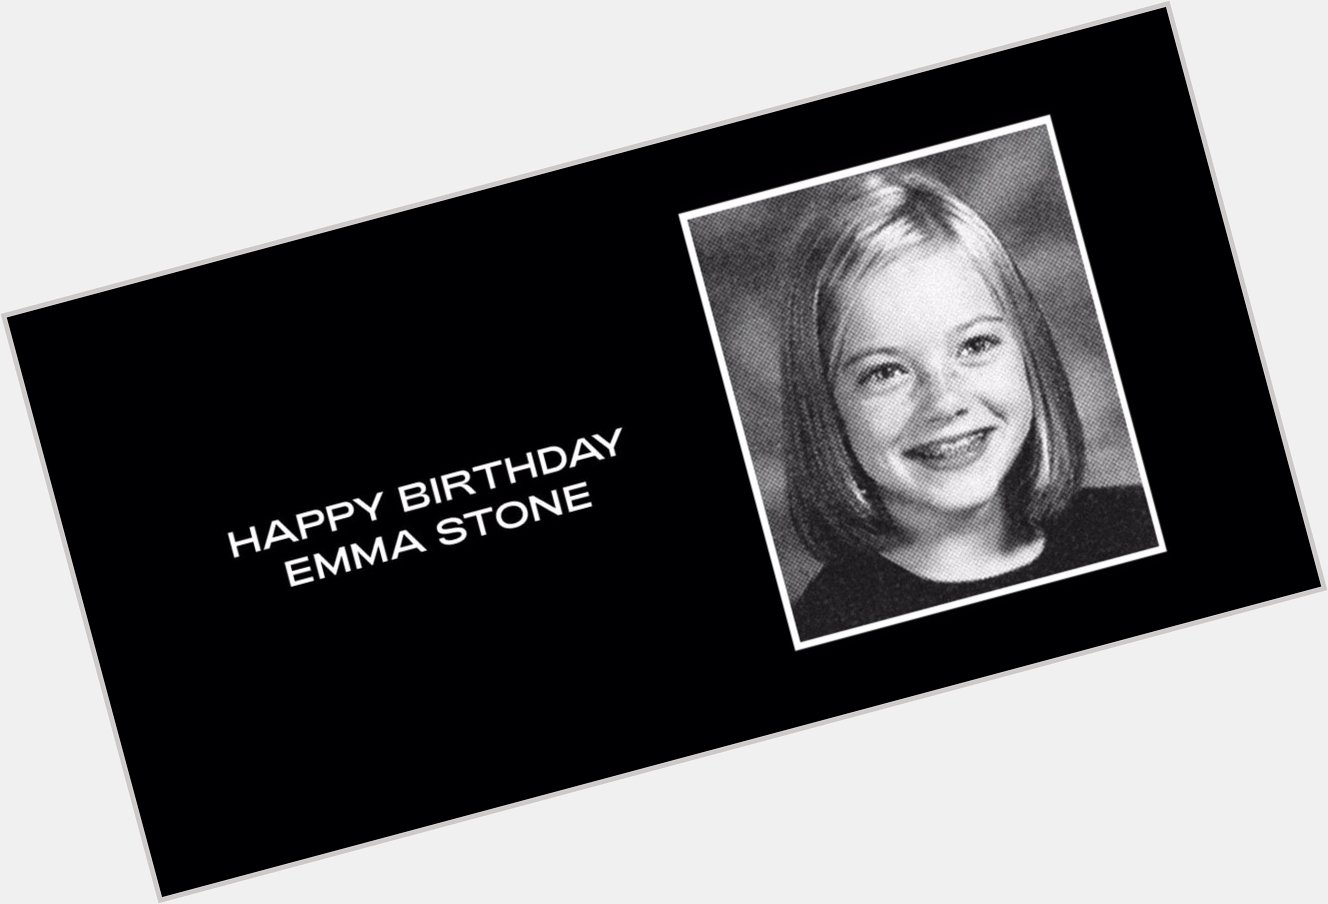 Happy Birthday Emma Stone! via 